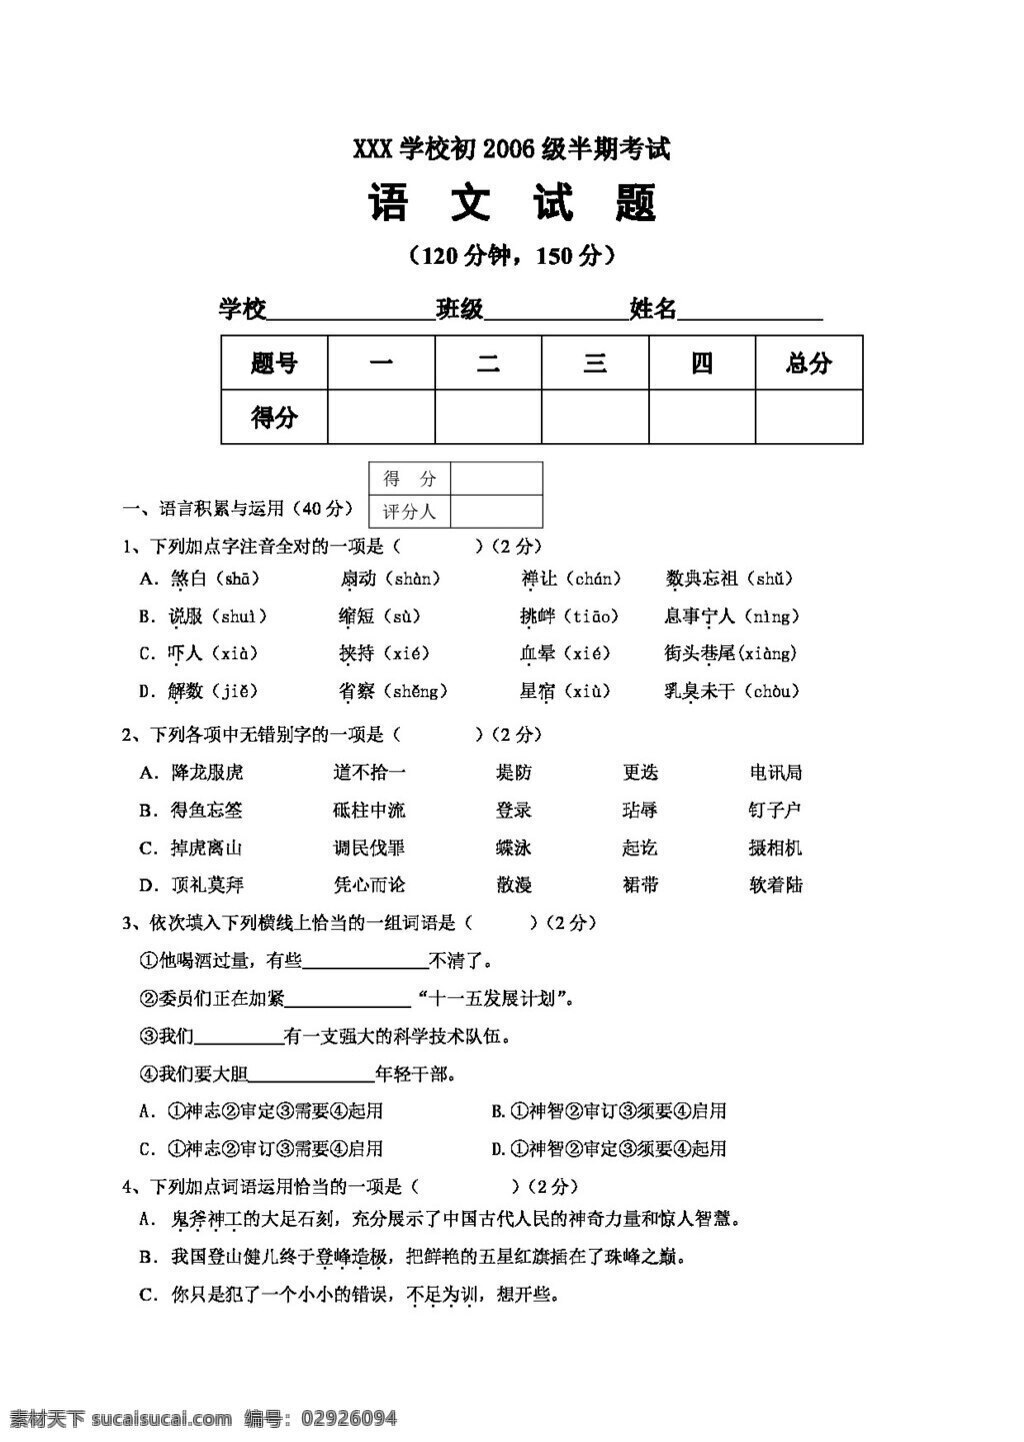 语文 人教 版 重庆市 北碚区 2006 级 适应性 试题 人教版 试题试卷